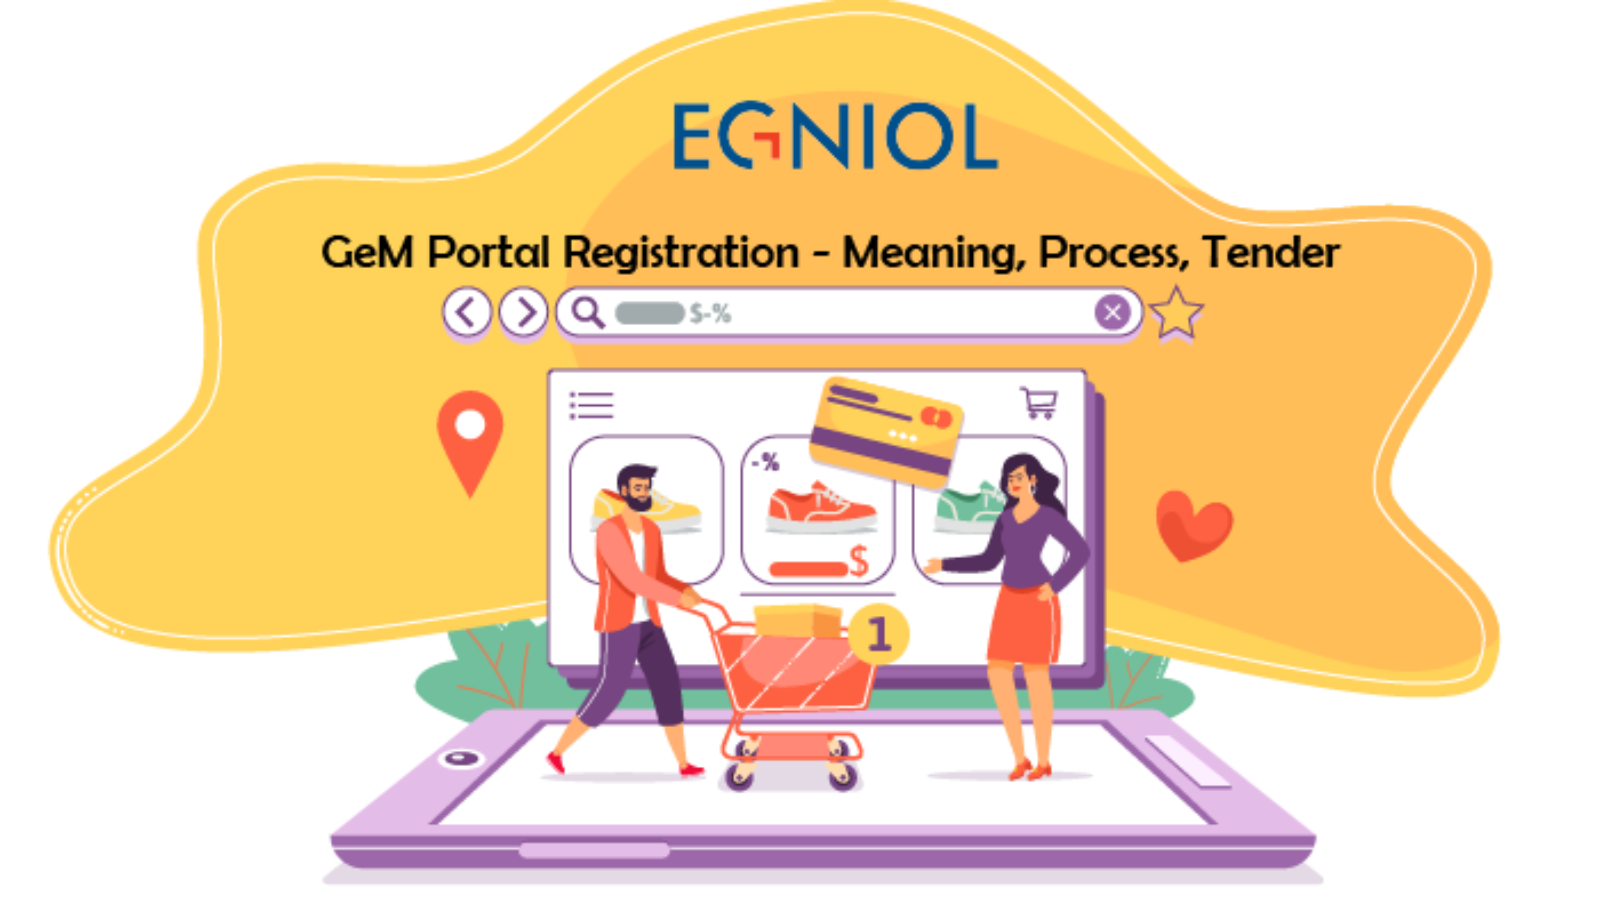 GeM Portal Registration , Meaning, Process, Tender - By Egniol